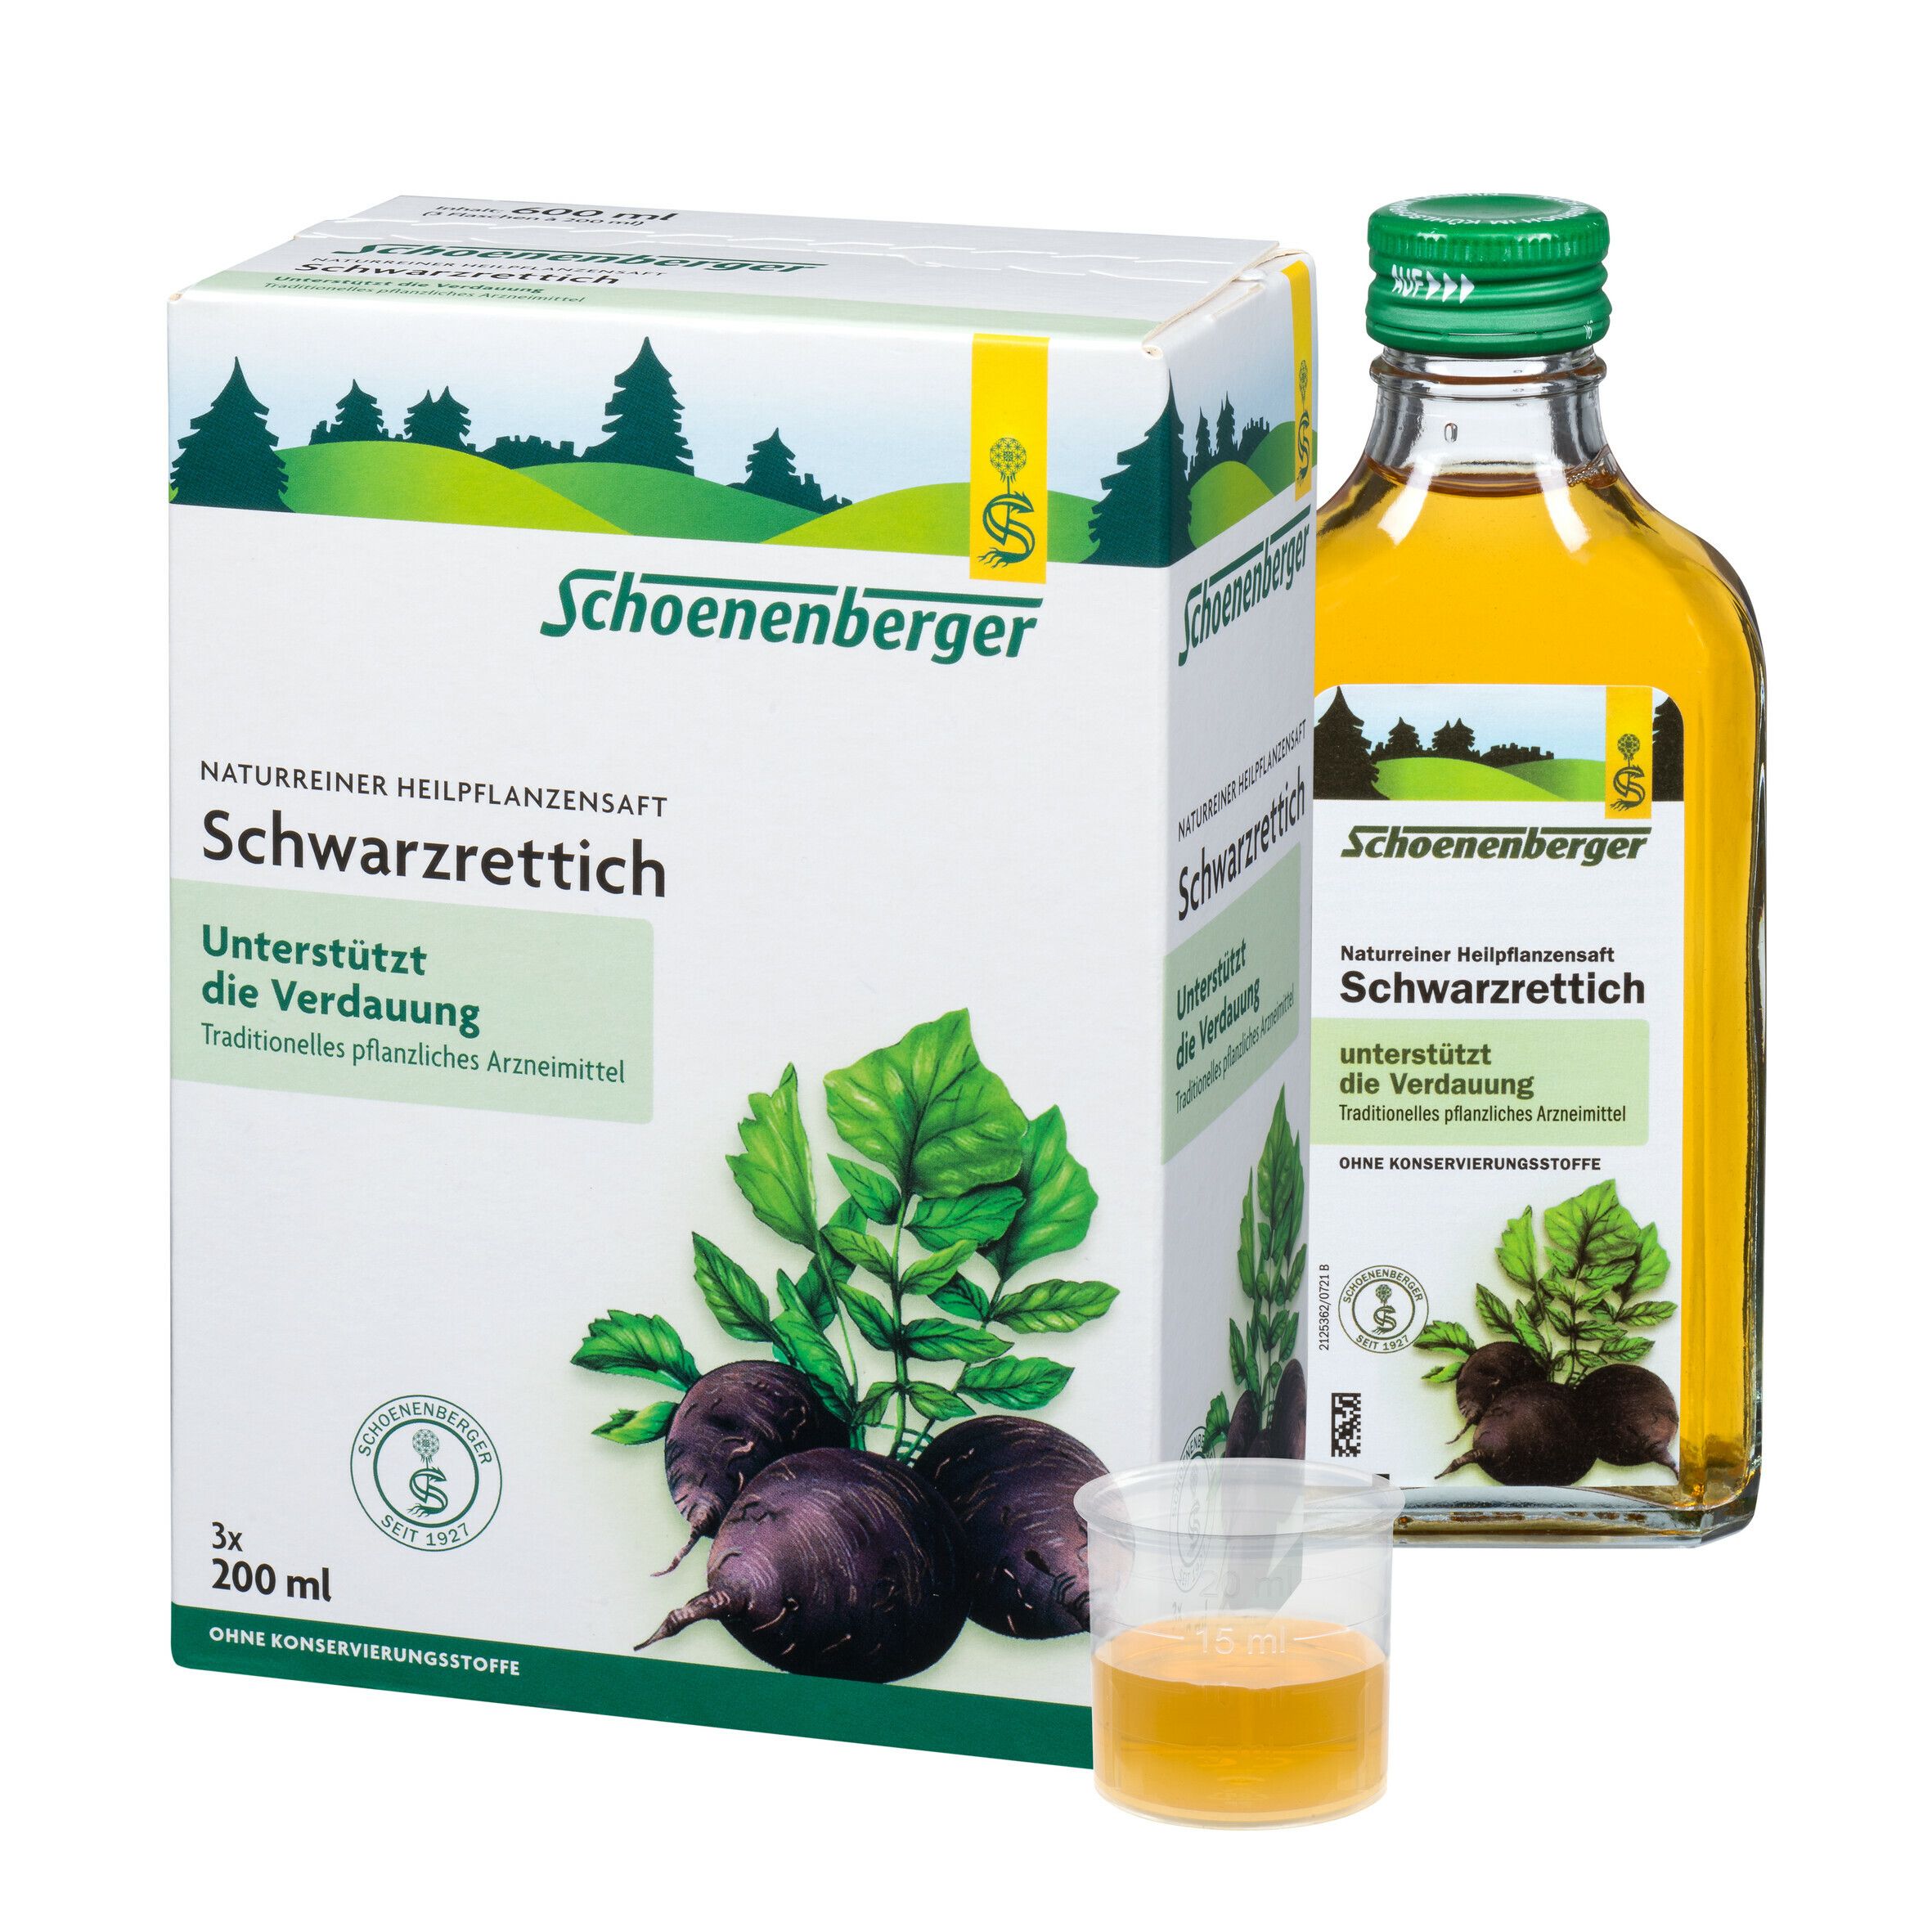 Schoenenberger® naturreiner Heilpflanzensaft Schwarzrettich